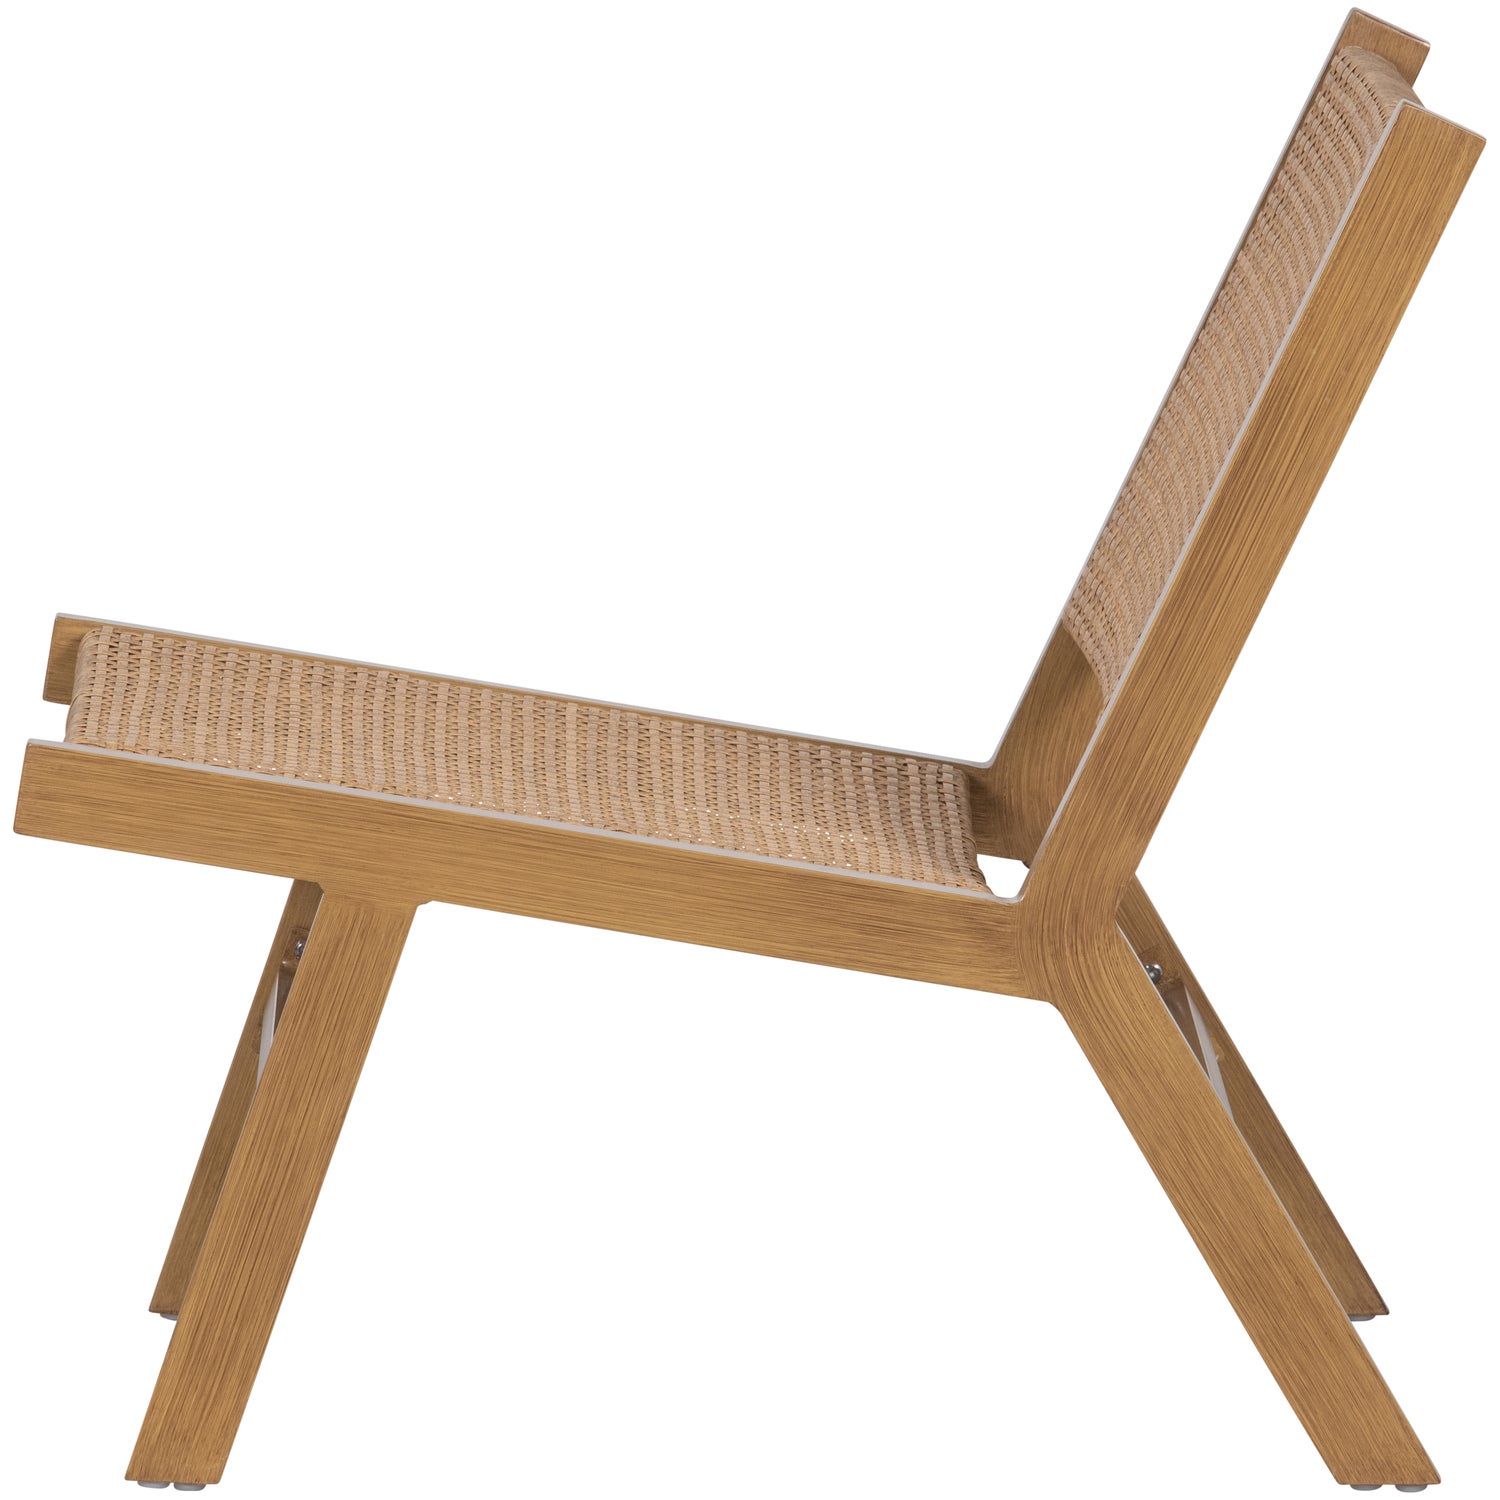 377166-N-03_VS_FA_Puk_fauteuil_aluminium_naturel.jpg?auto=webp&format=png&width=1500&height=1500